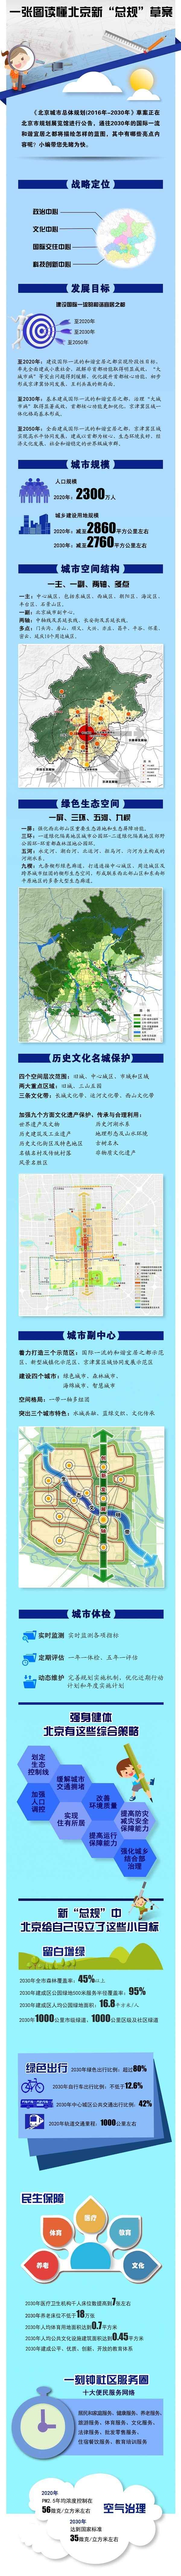 北京未来15年规划草案：人口控制在2300万左右